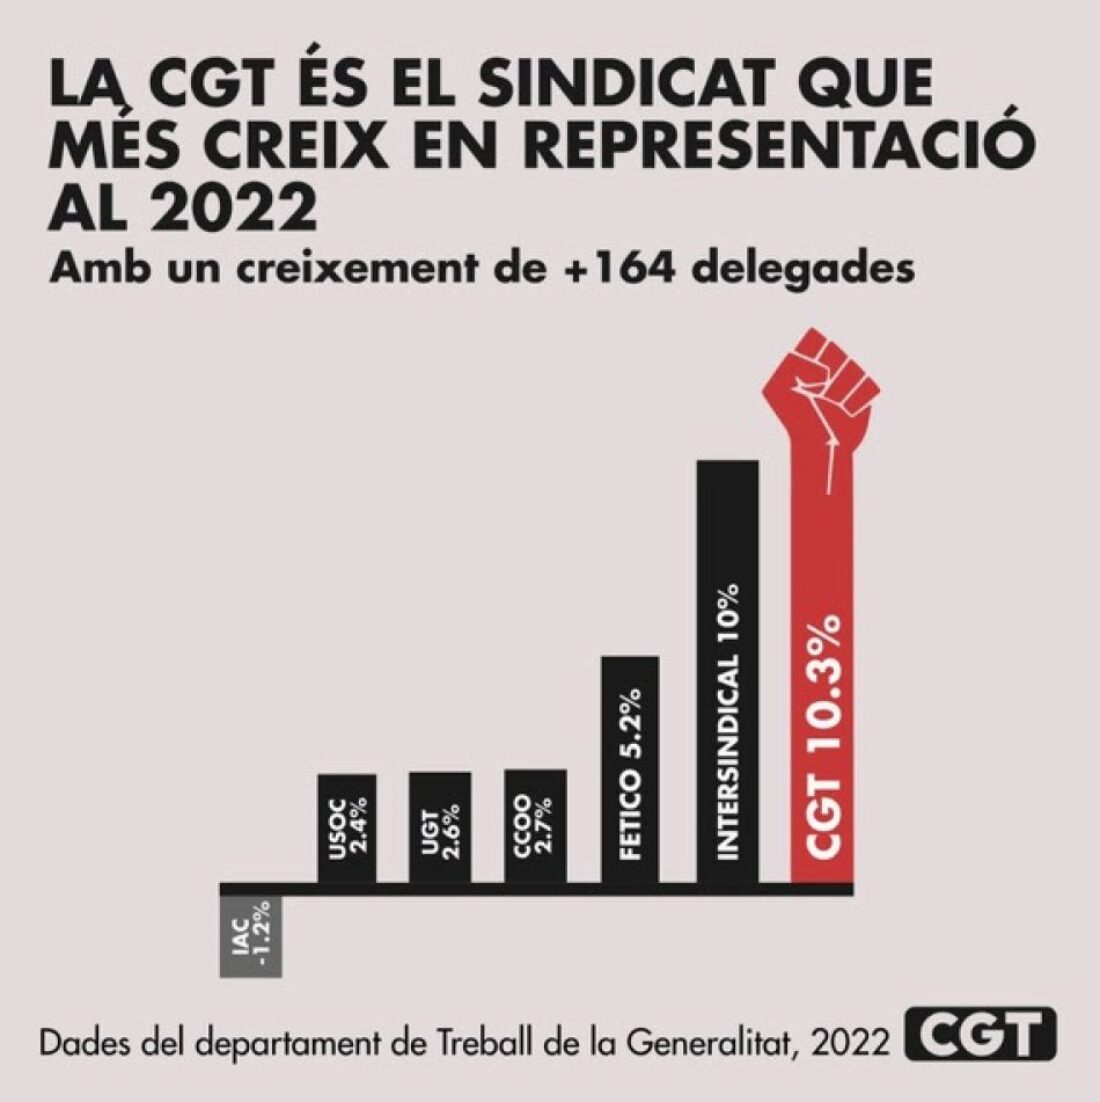 La CGT Catalunya el sindicat que més creix a les eleccions sindicals del 2022